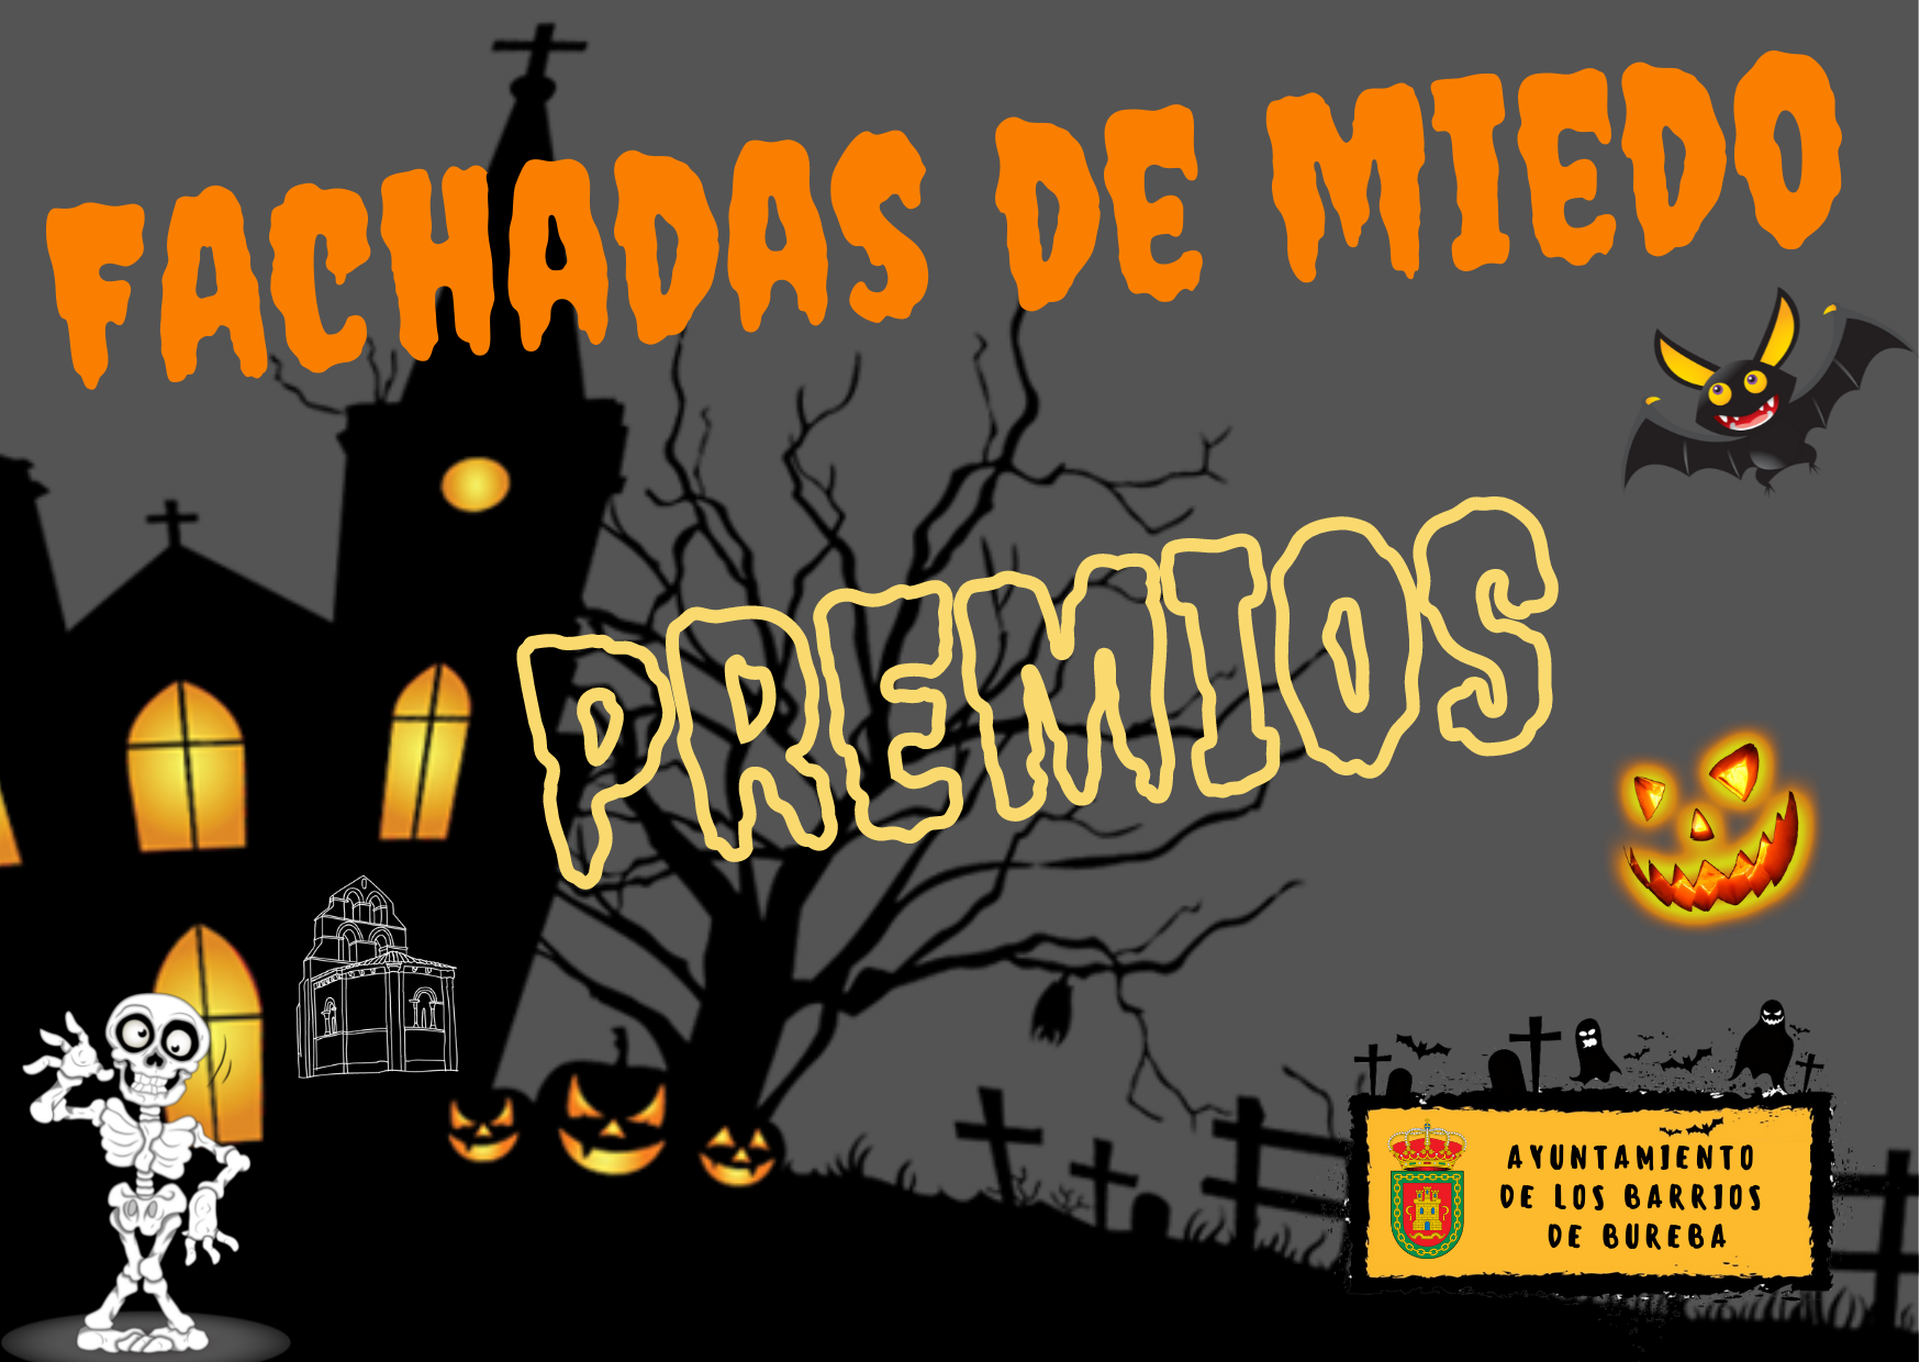 Premiados en el I concurso "Fachadas de Miedo" Halloween 2021